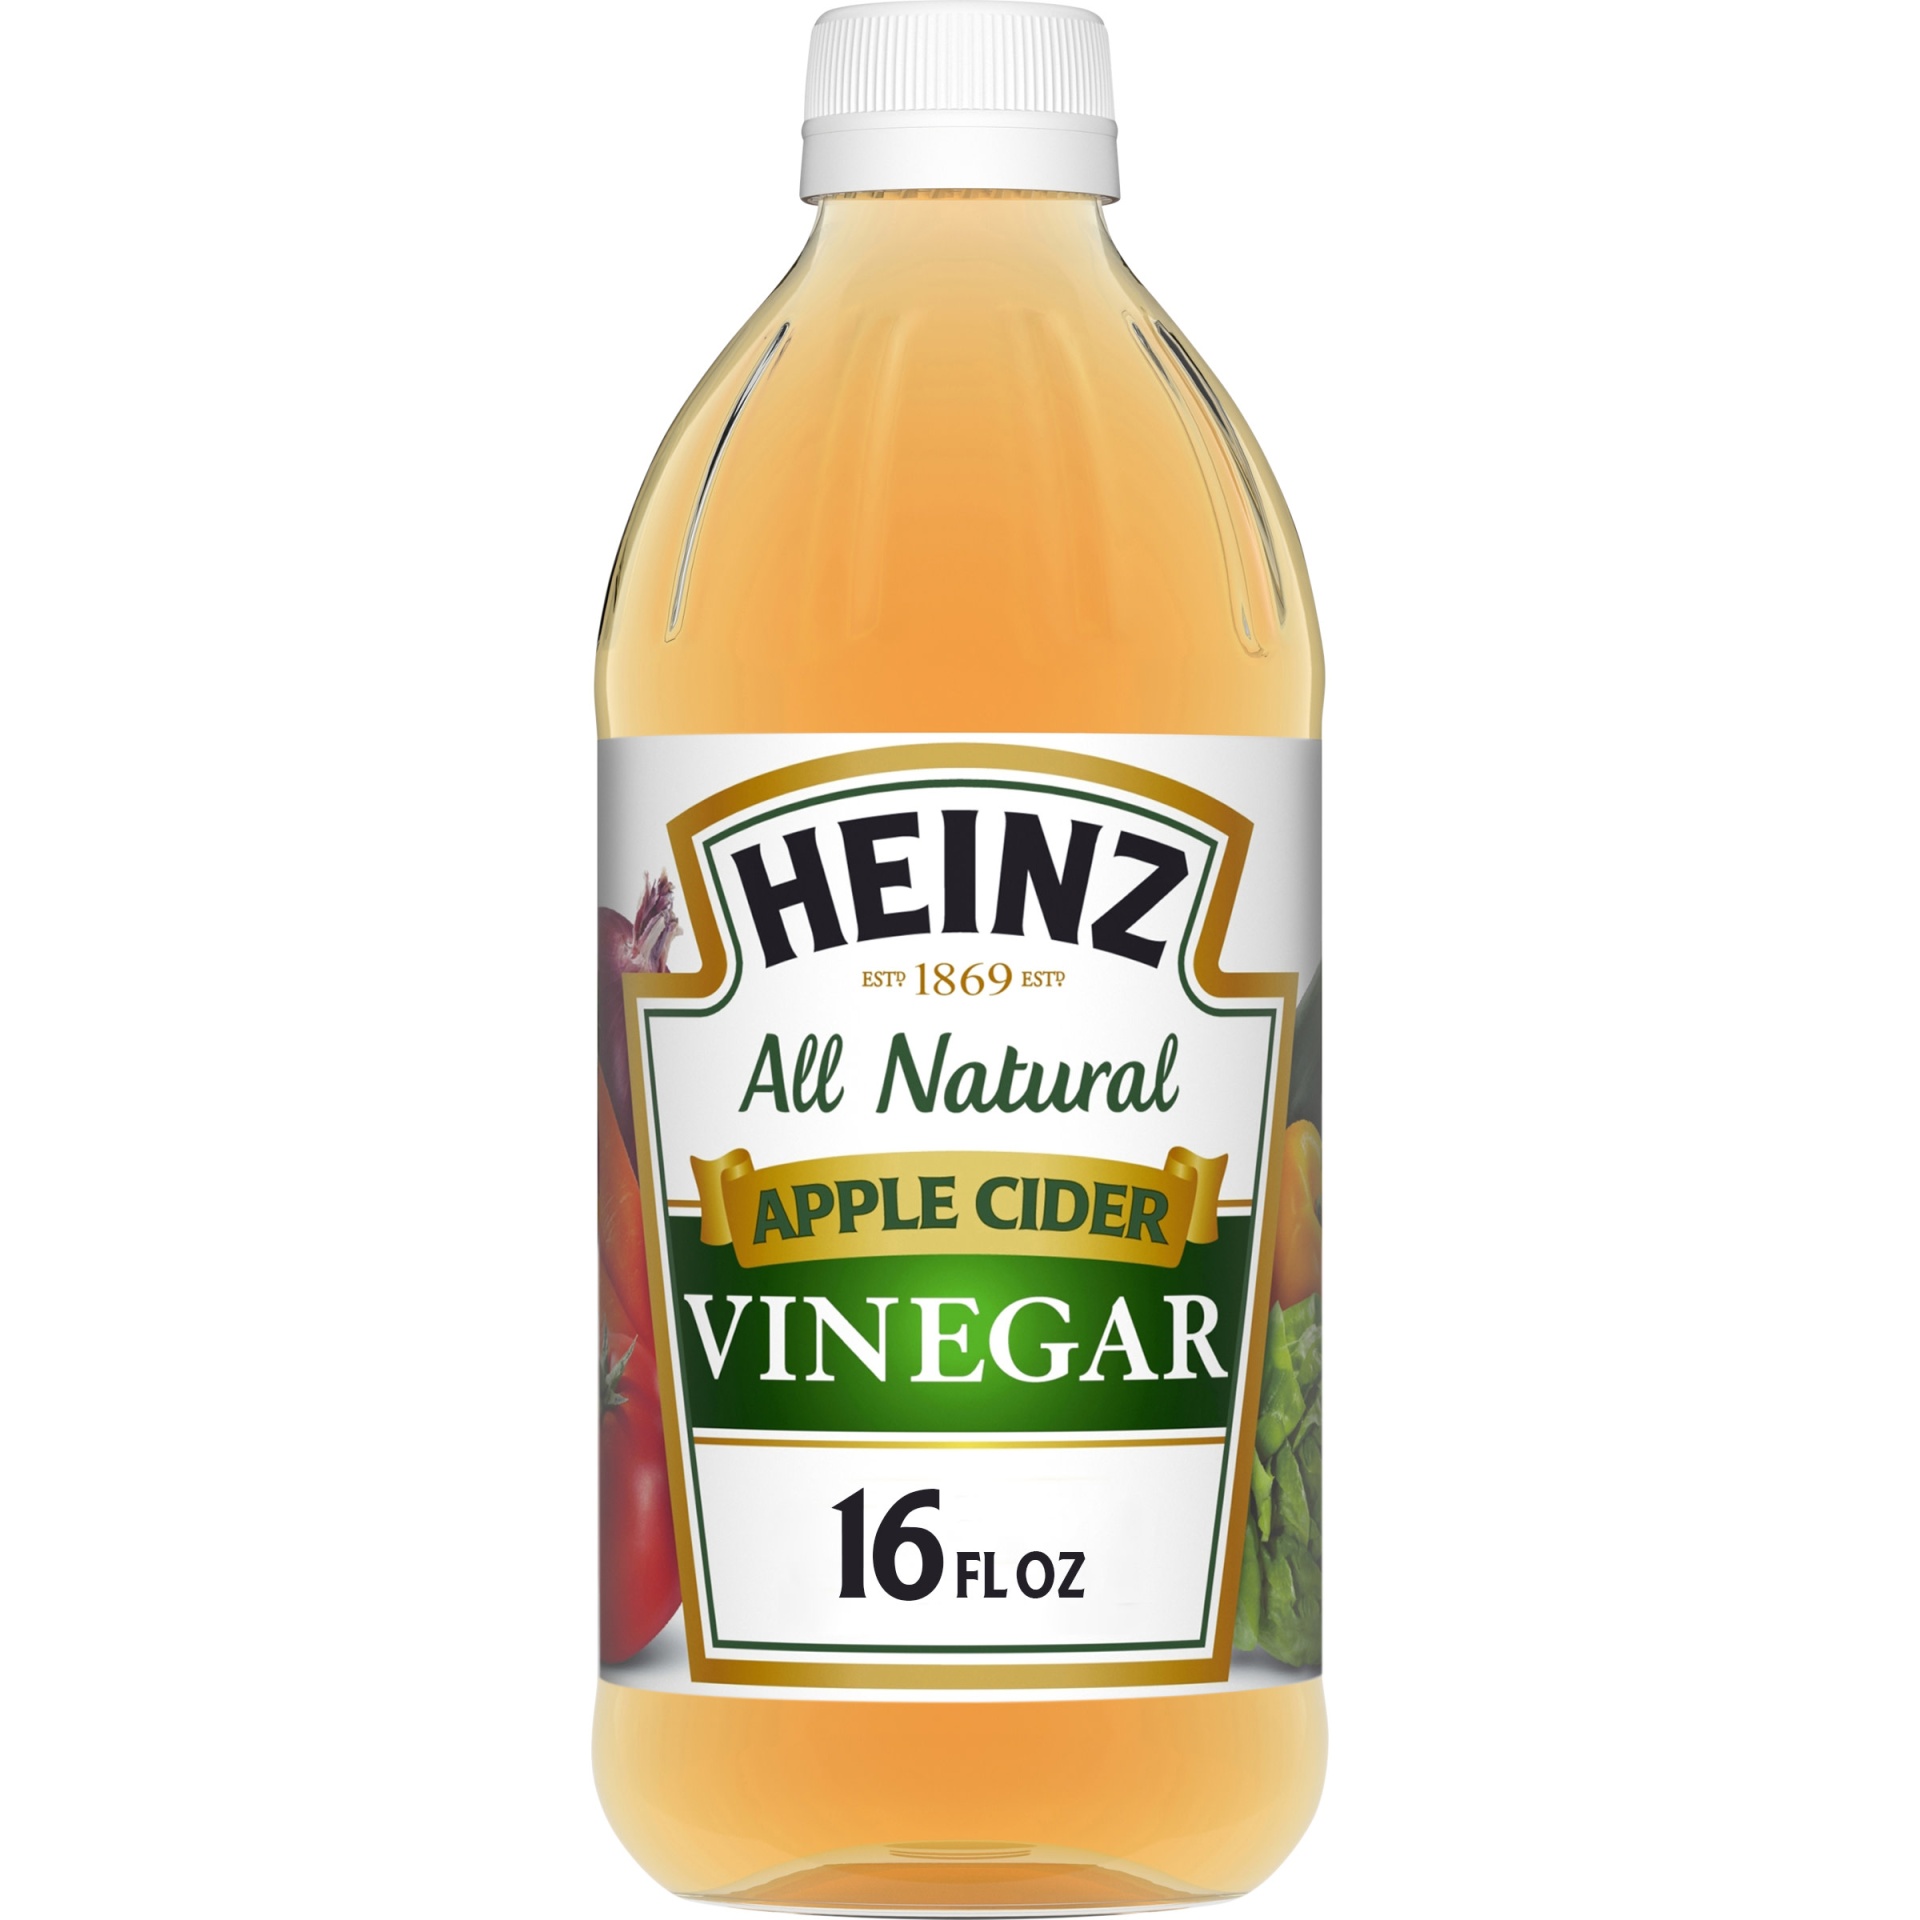 slide 1 of 1, Heinz All Natural Apple Cider Vinegar with 5% Acidity Bottle, 16 fl oz